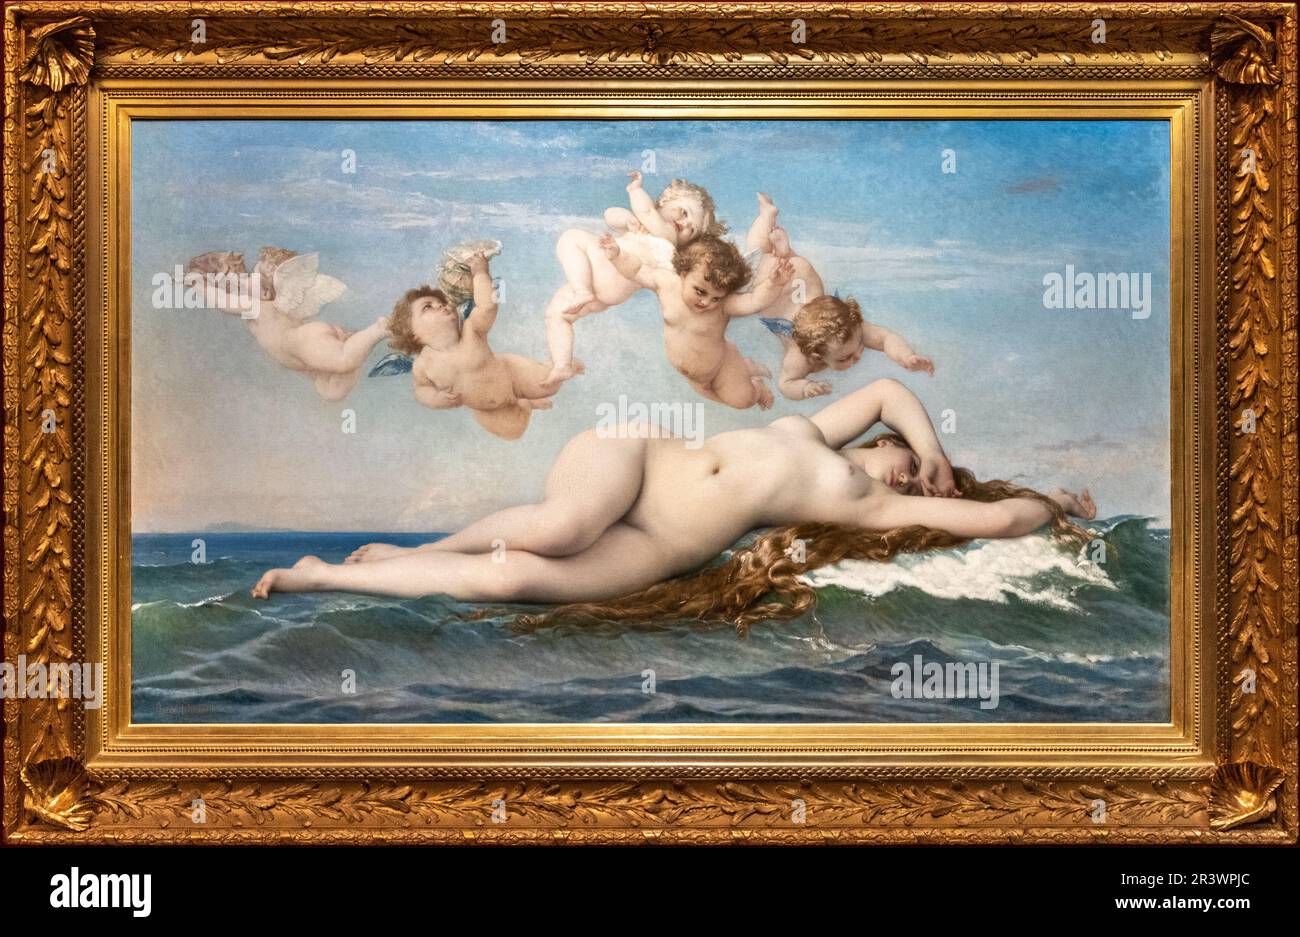 La naissance de Vénus: Reconnaissance de Vénus, peinture du peintre français Alexandre Cabanel à partir de 1863, Musée d'Orsay à Paris, France Banque D'Images